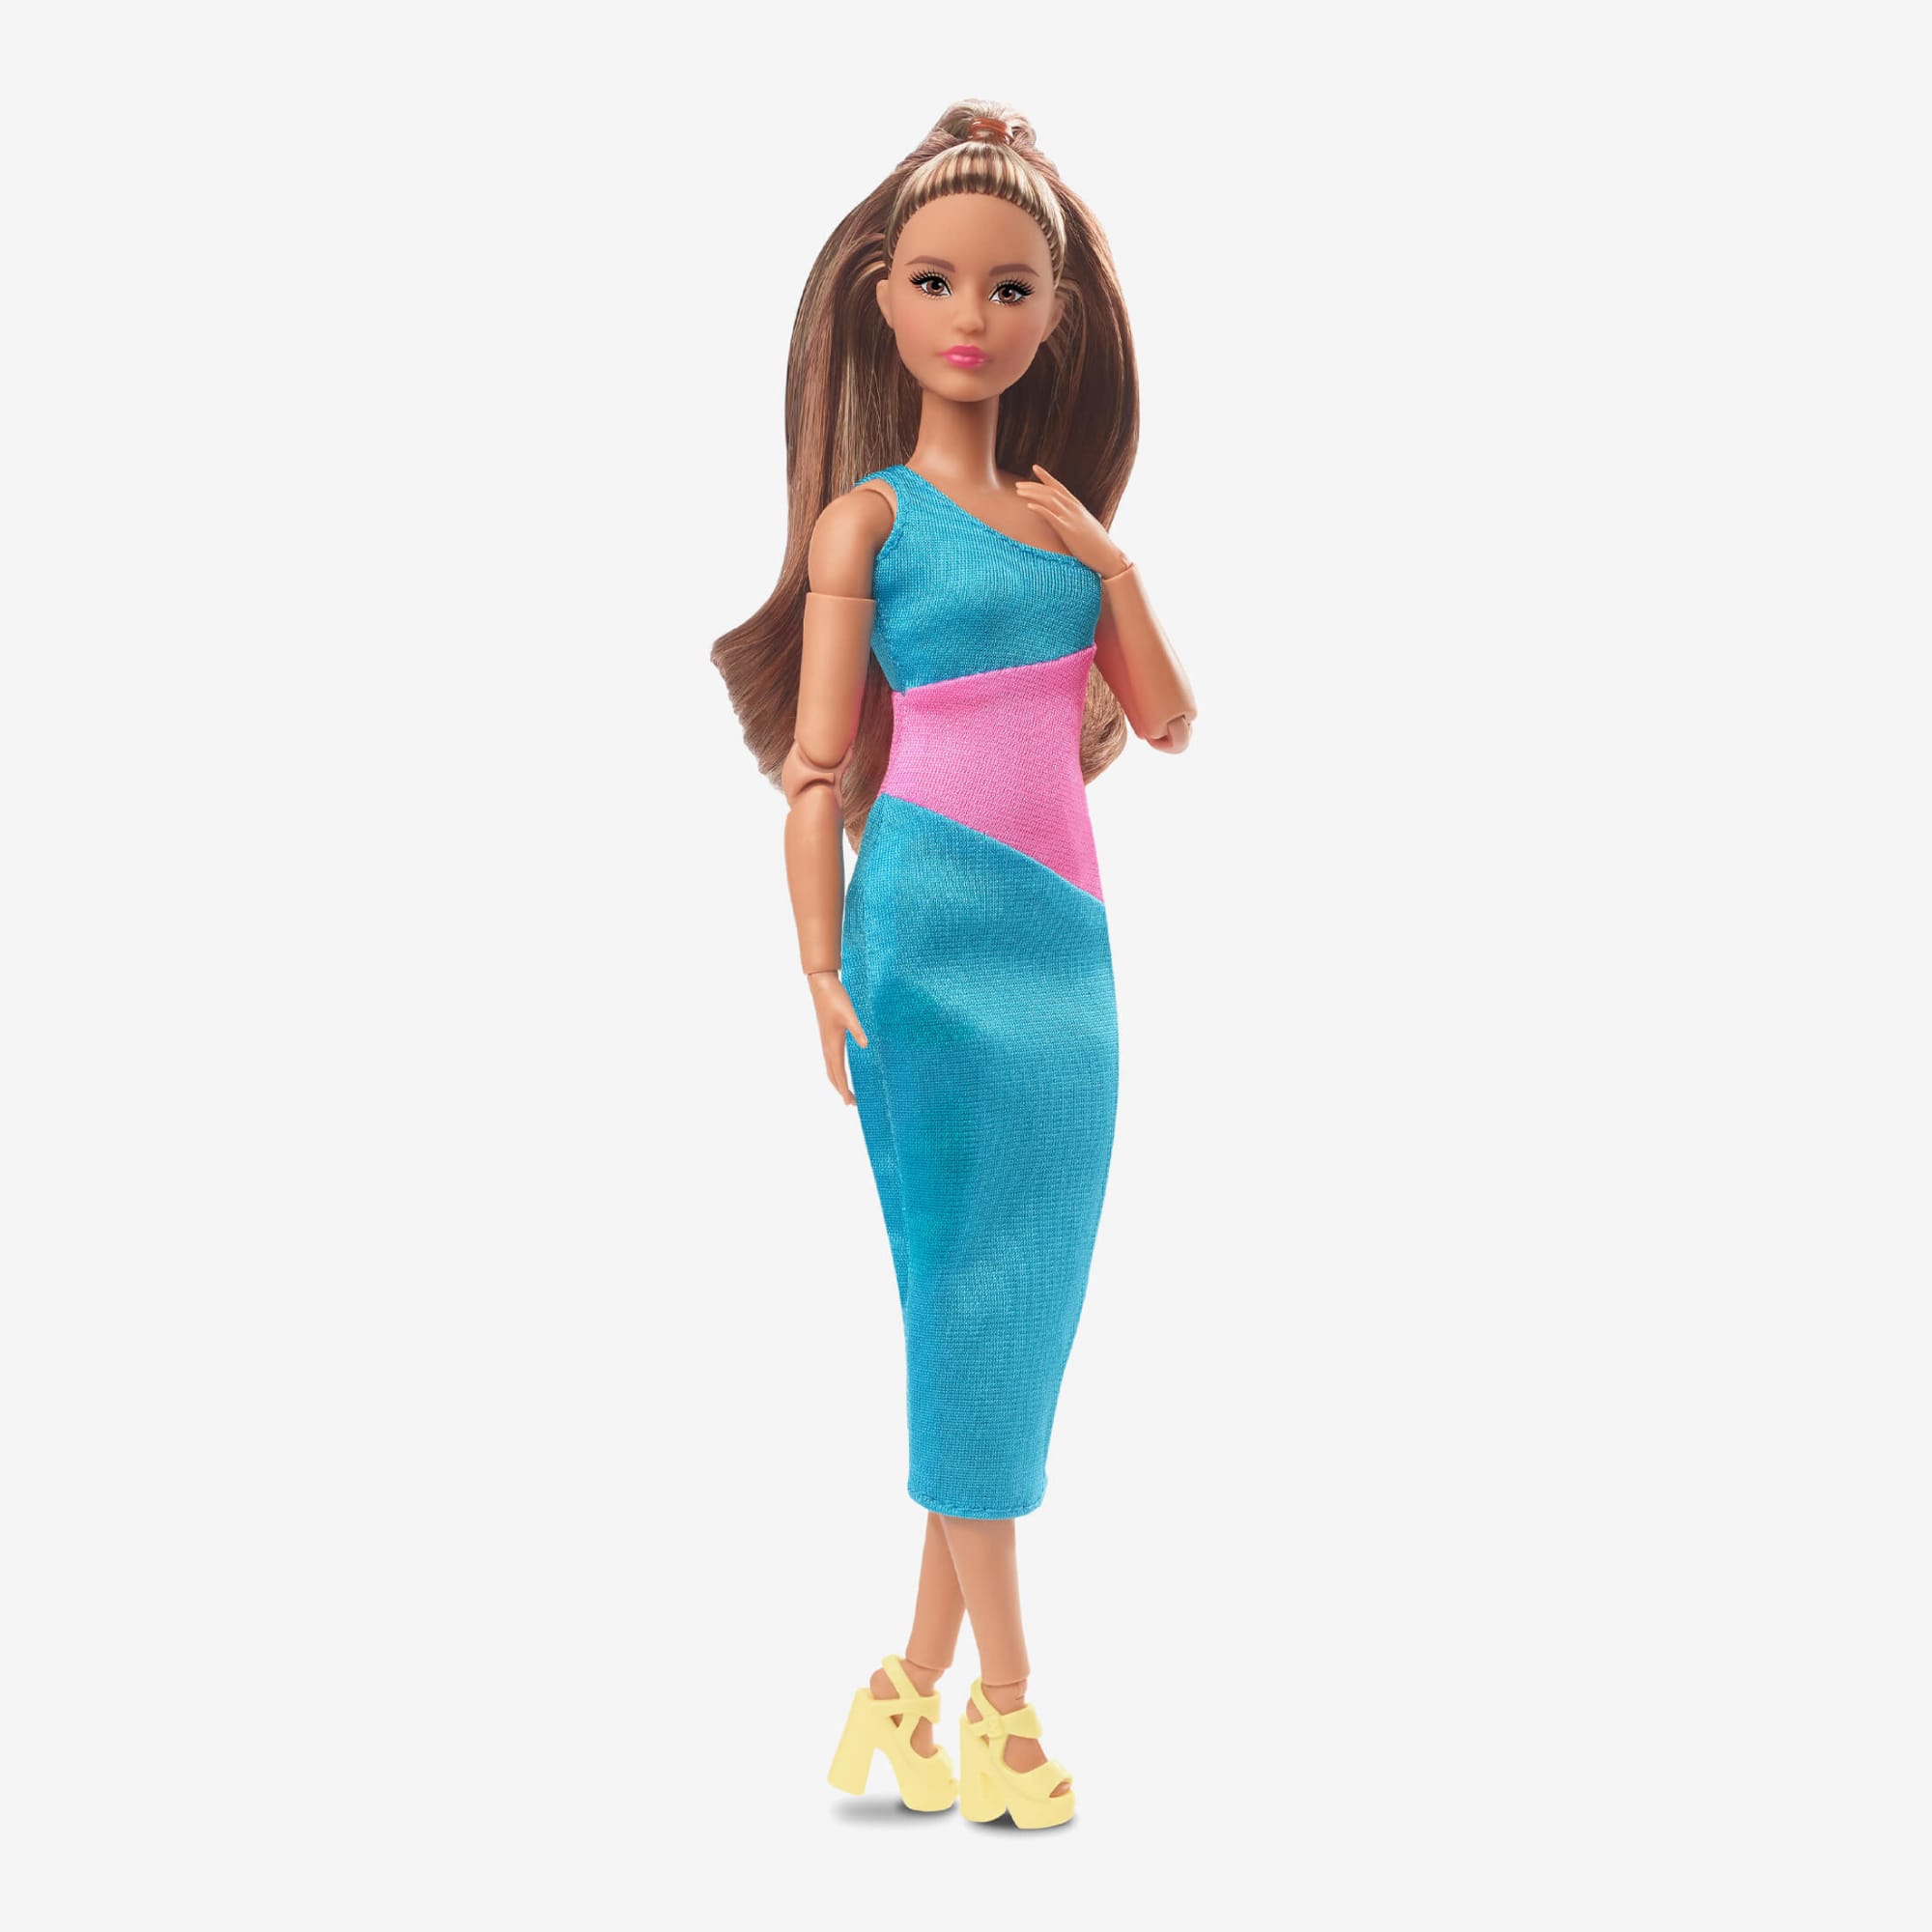 Barbie Looks Doll (Petite, Long Brunette Hair)